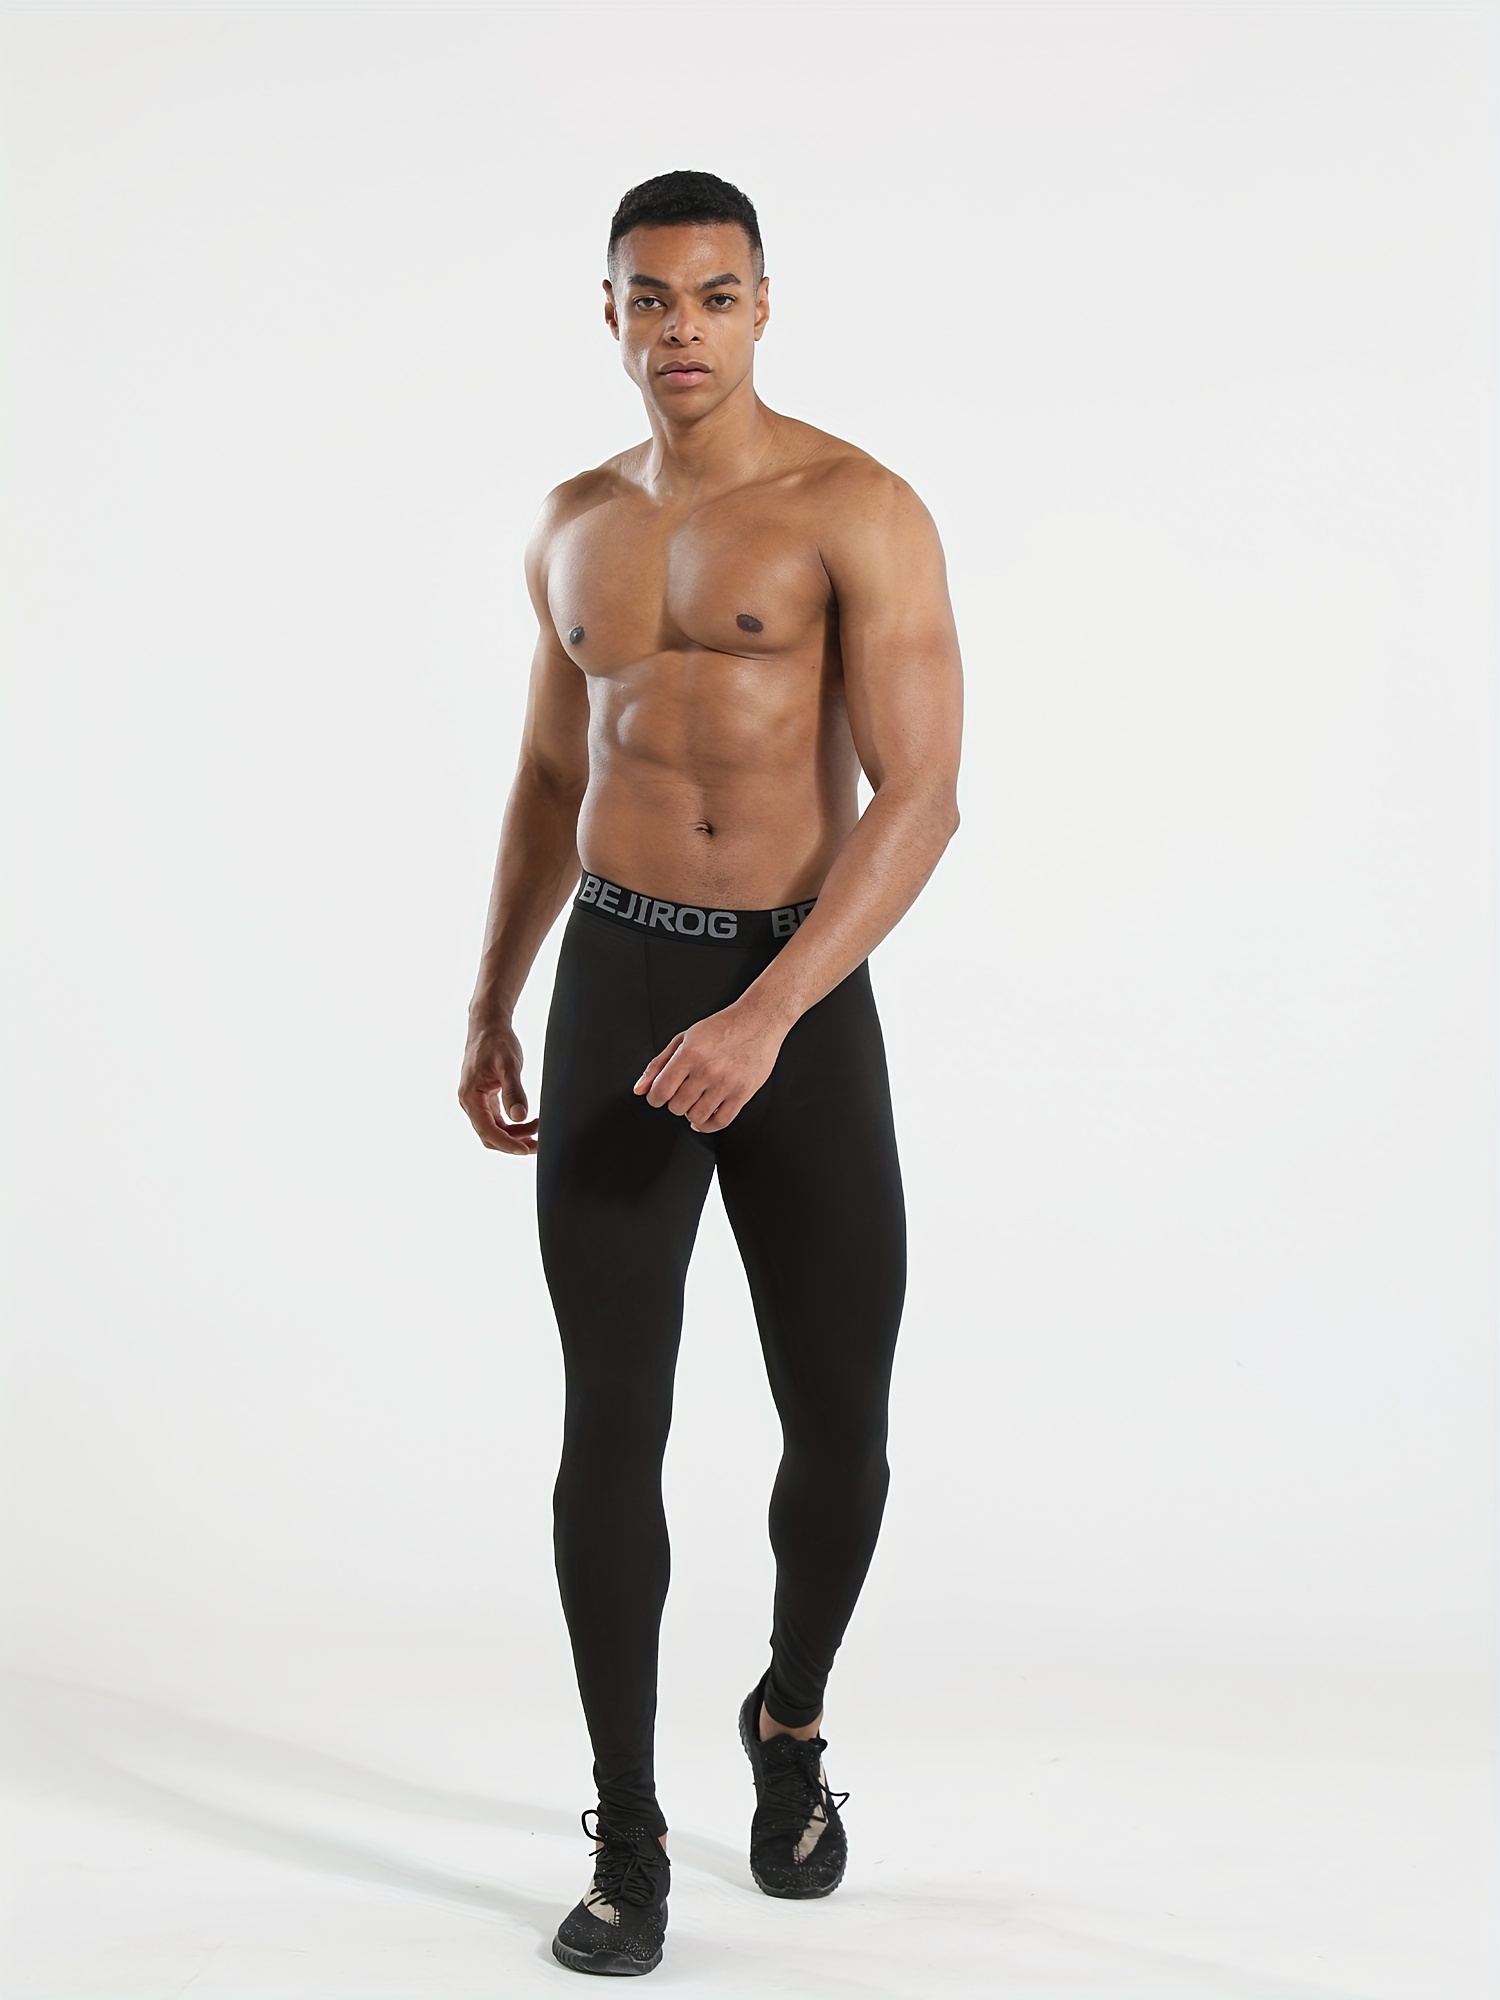 Collant de sport homme - Sous-vêtements homme - Sport - Vêtements